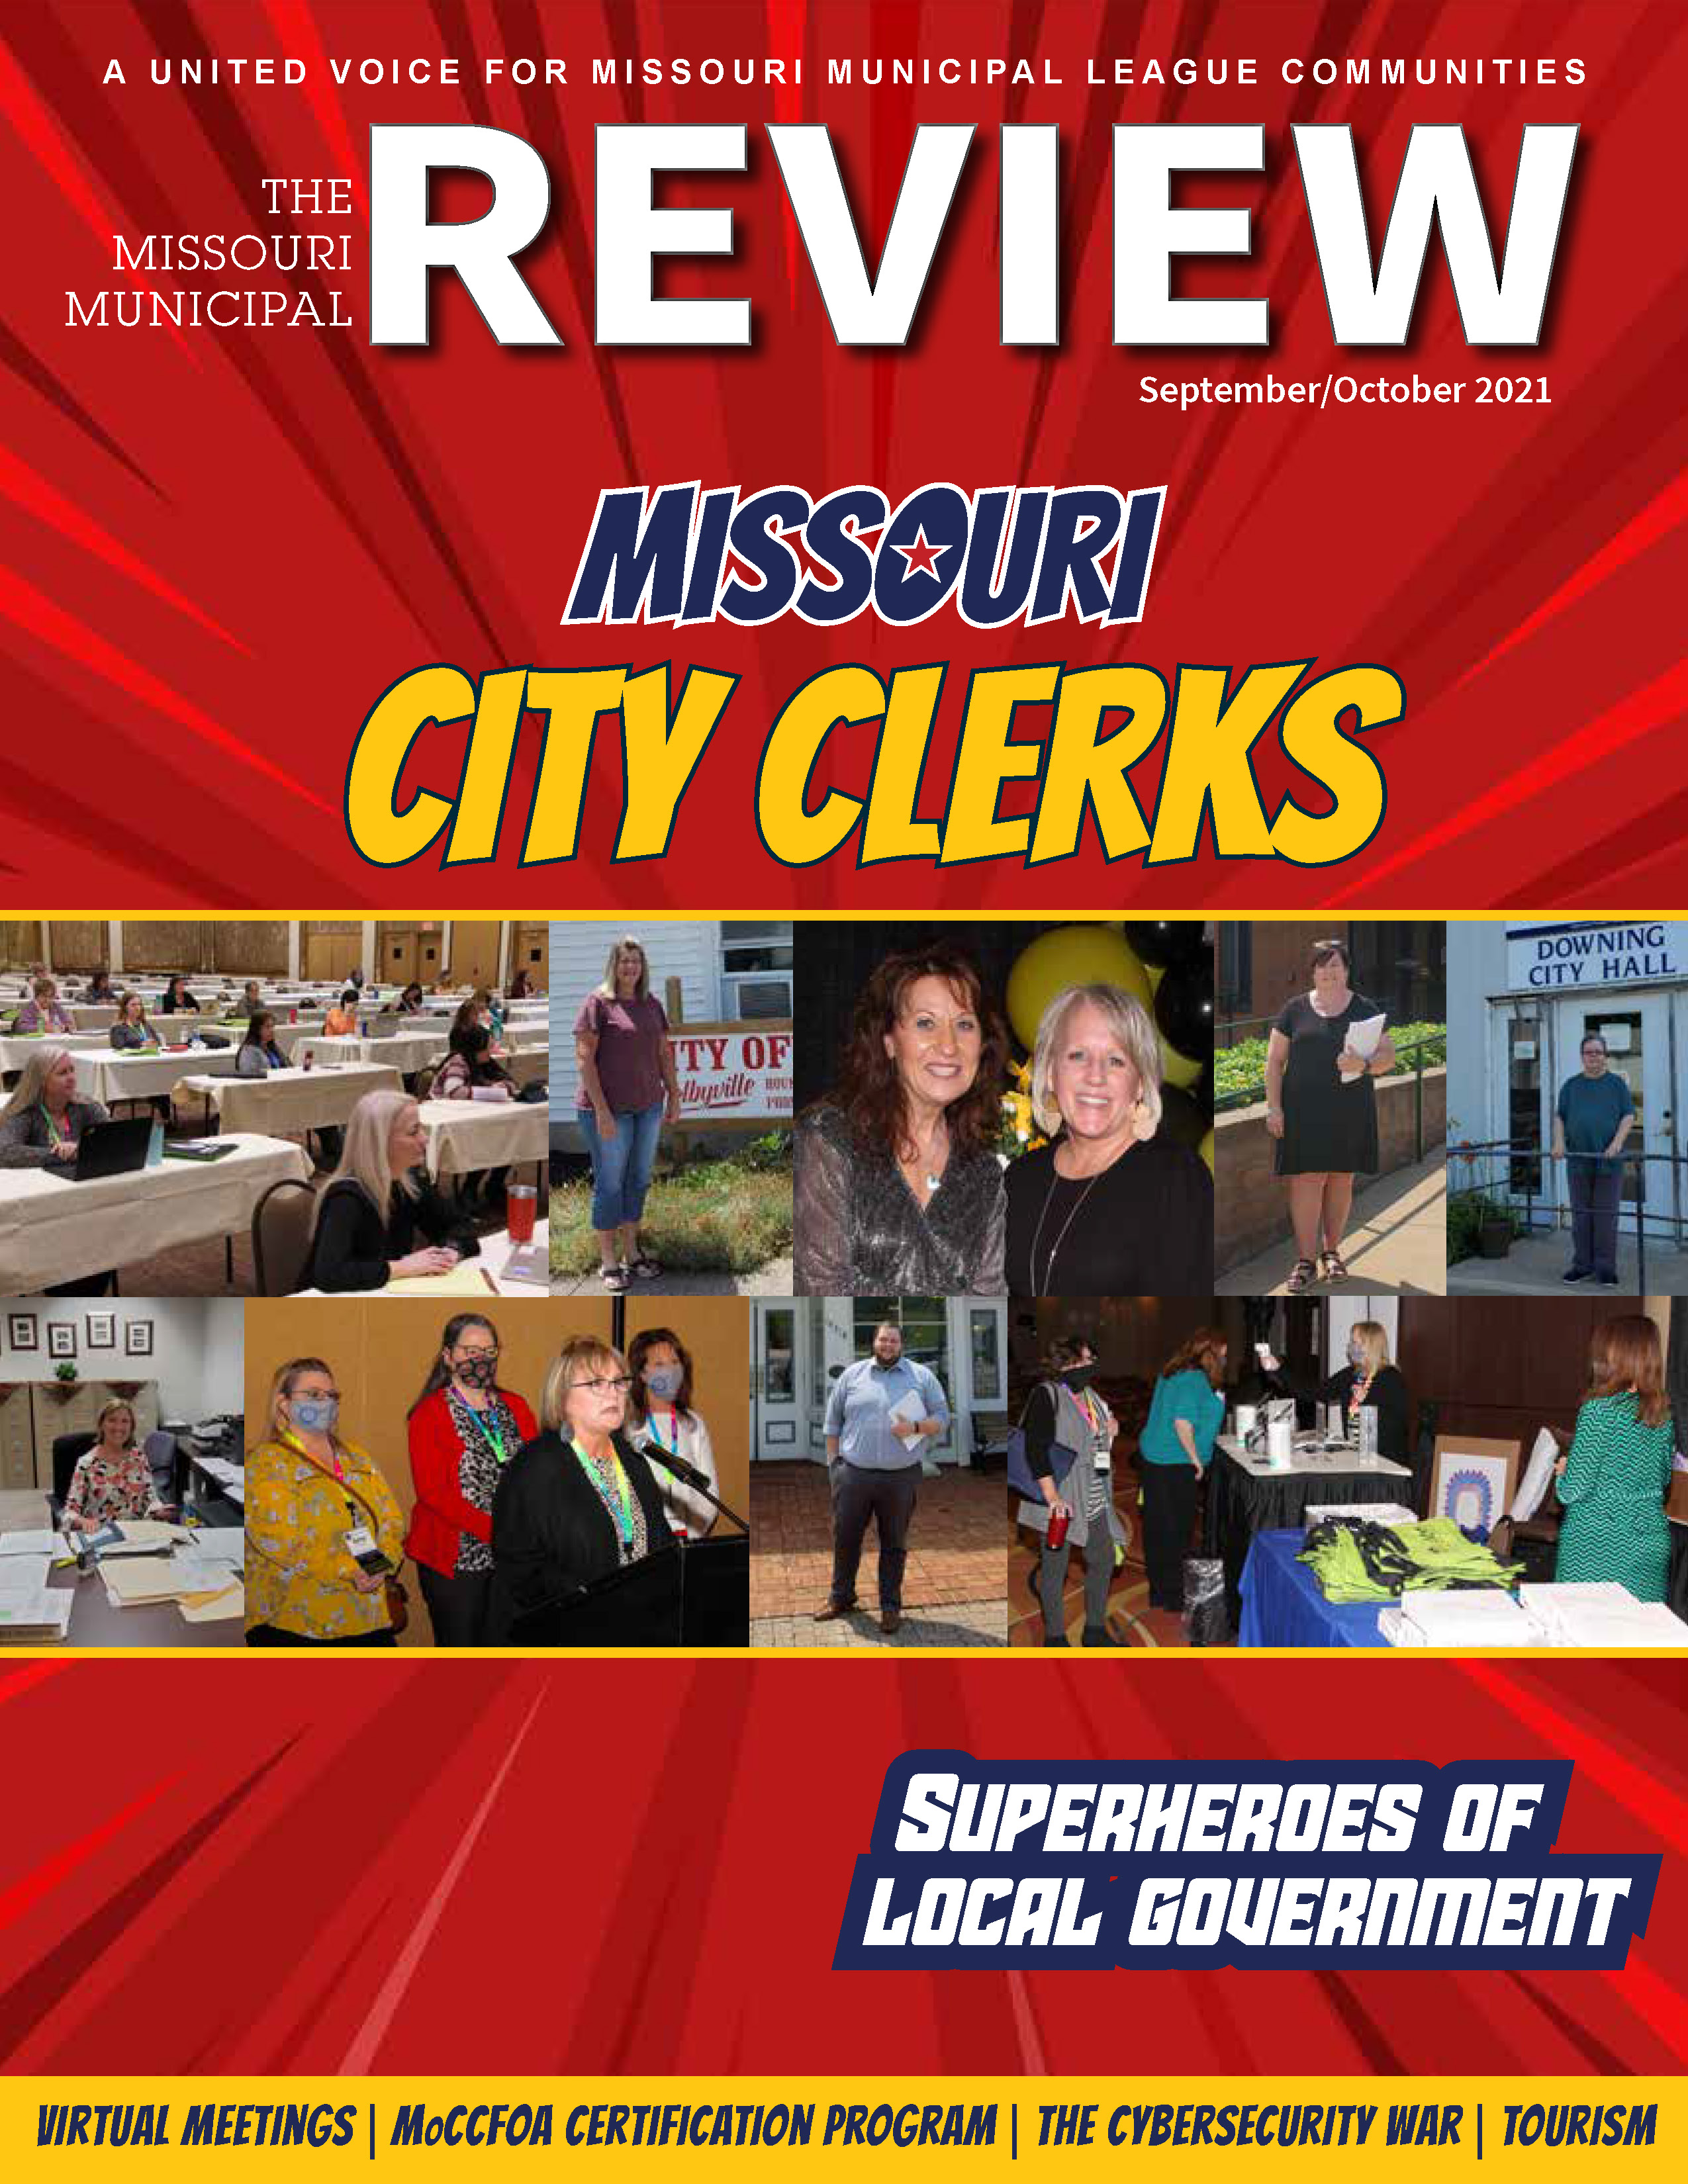 The Missouri Municipal Review